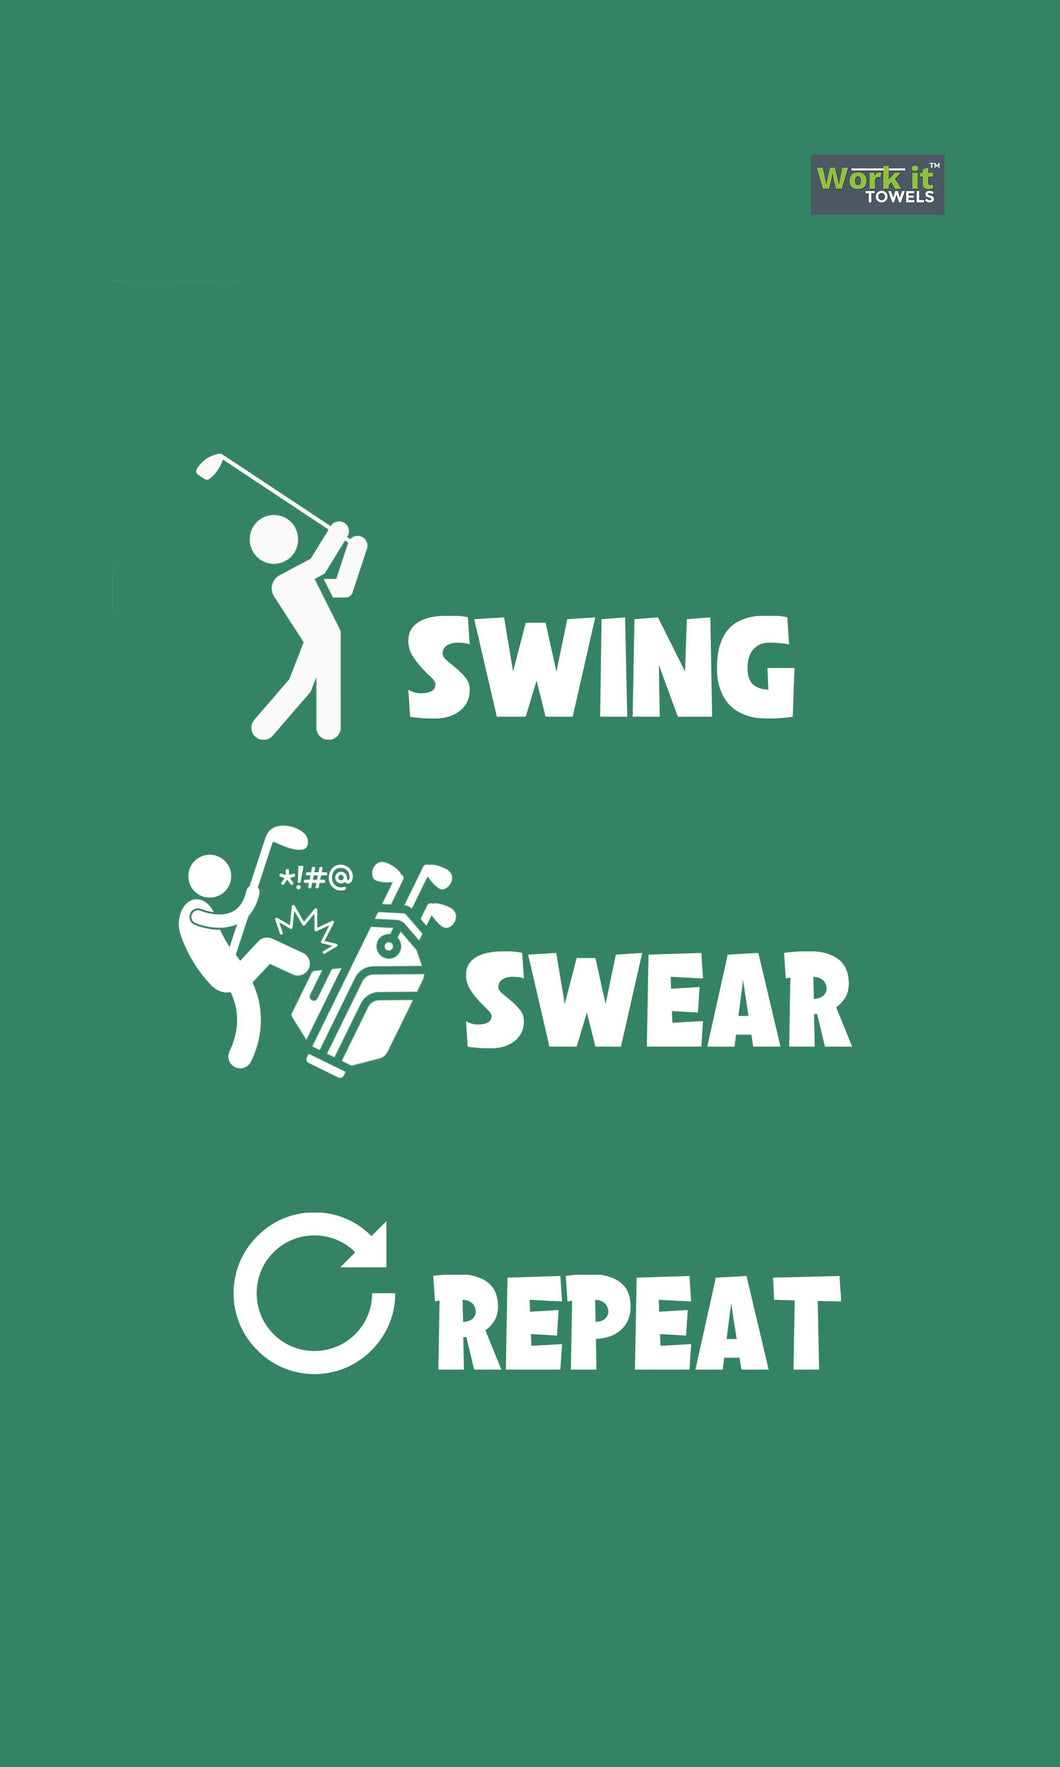 Swing, Swear, Repeat